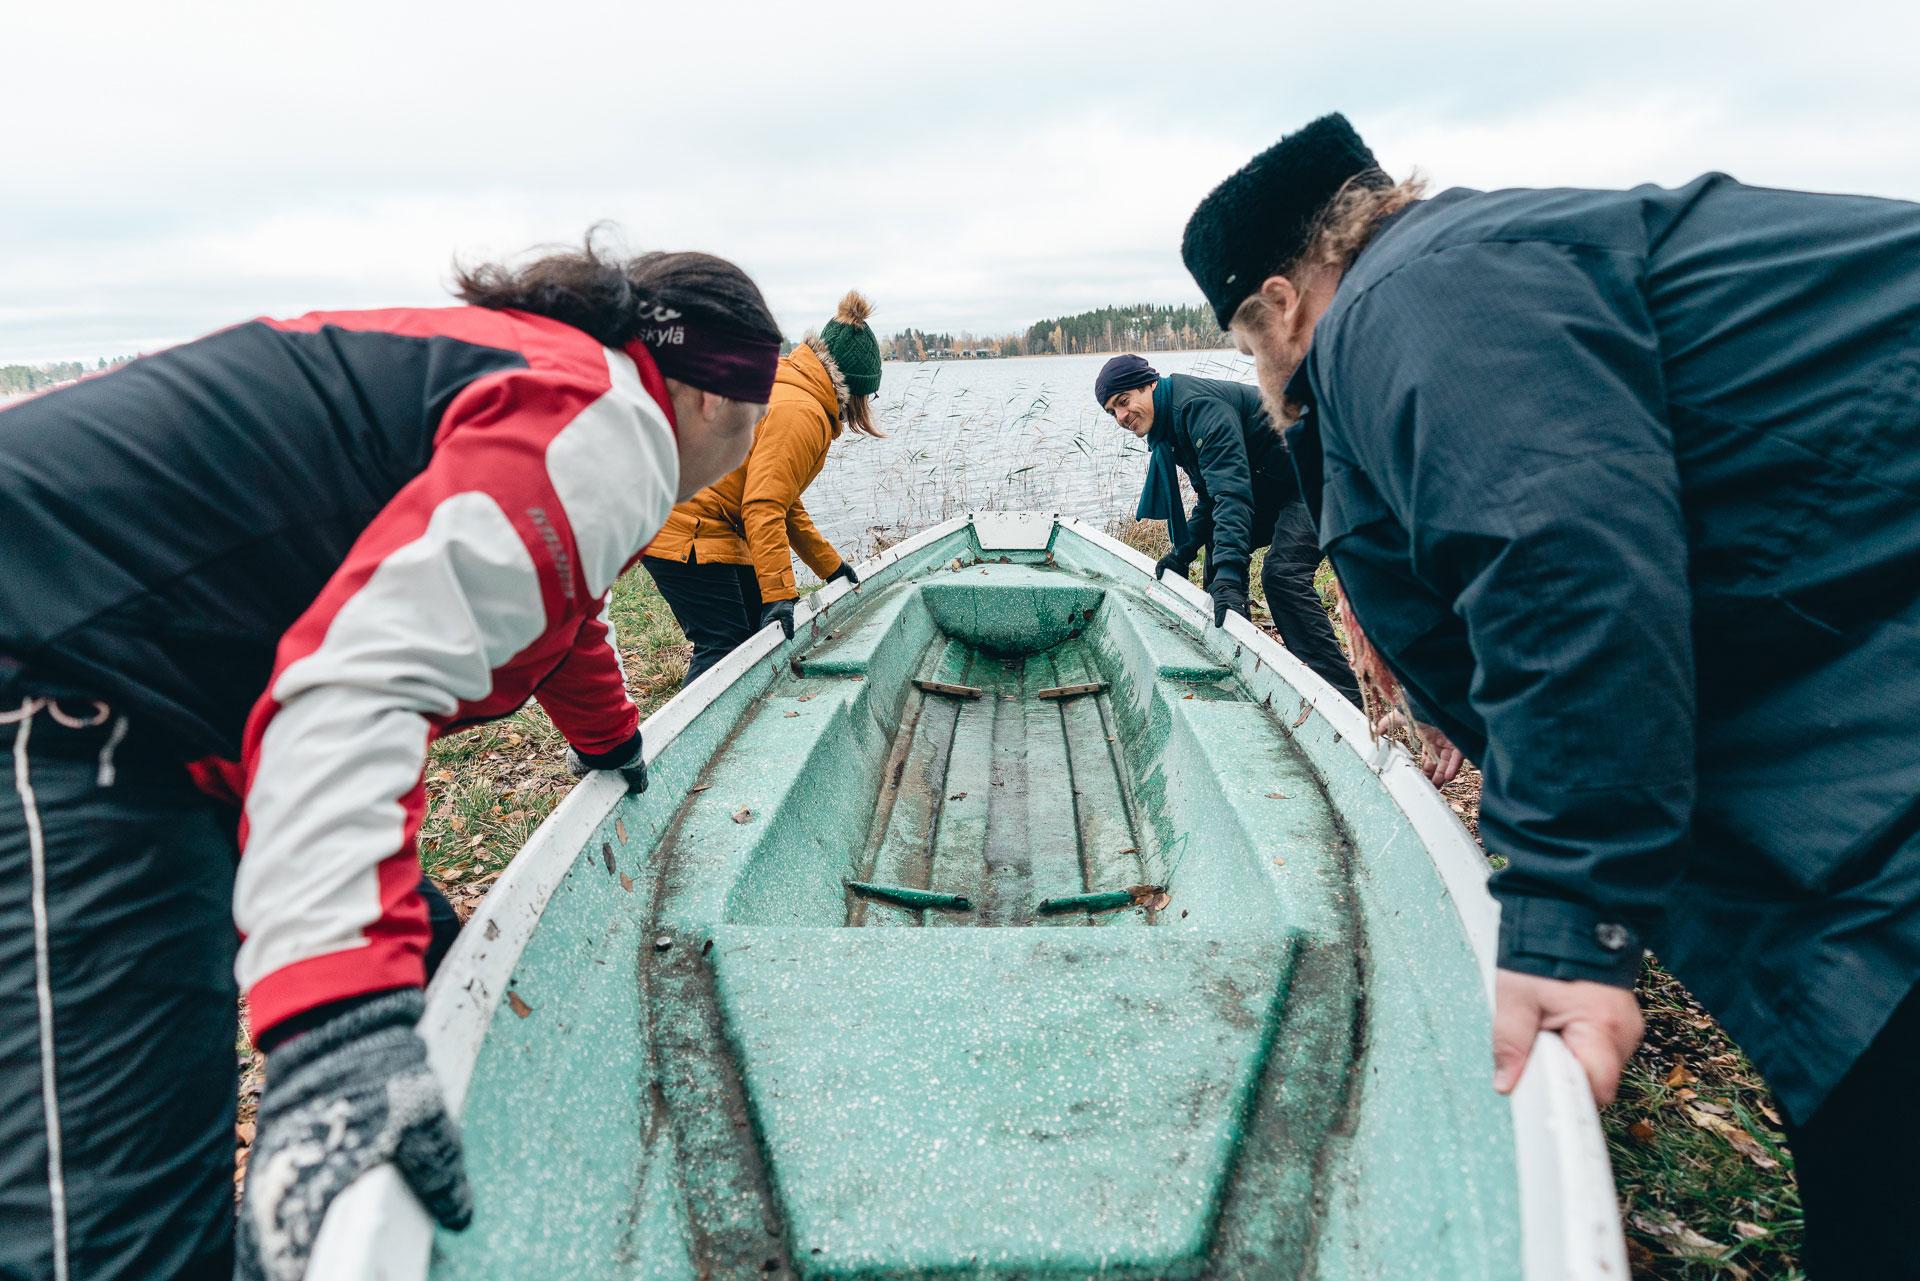 Neljä ihmistä työntää venettä vesille syksyisessä maisemassa.